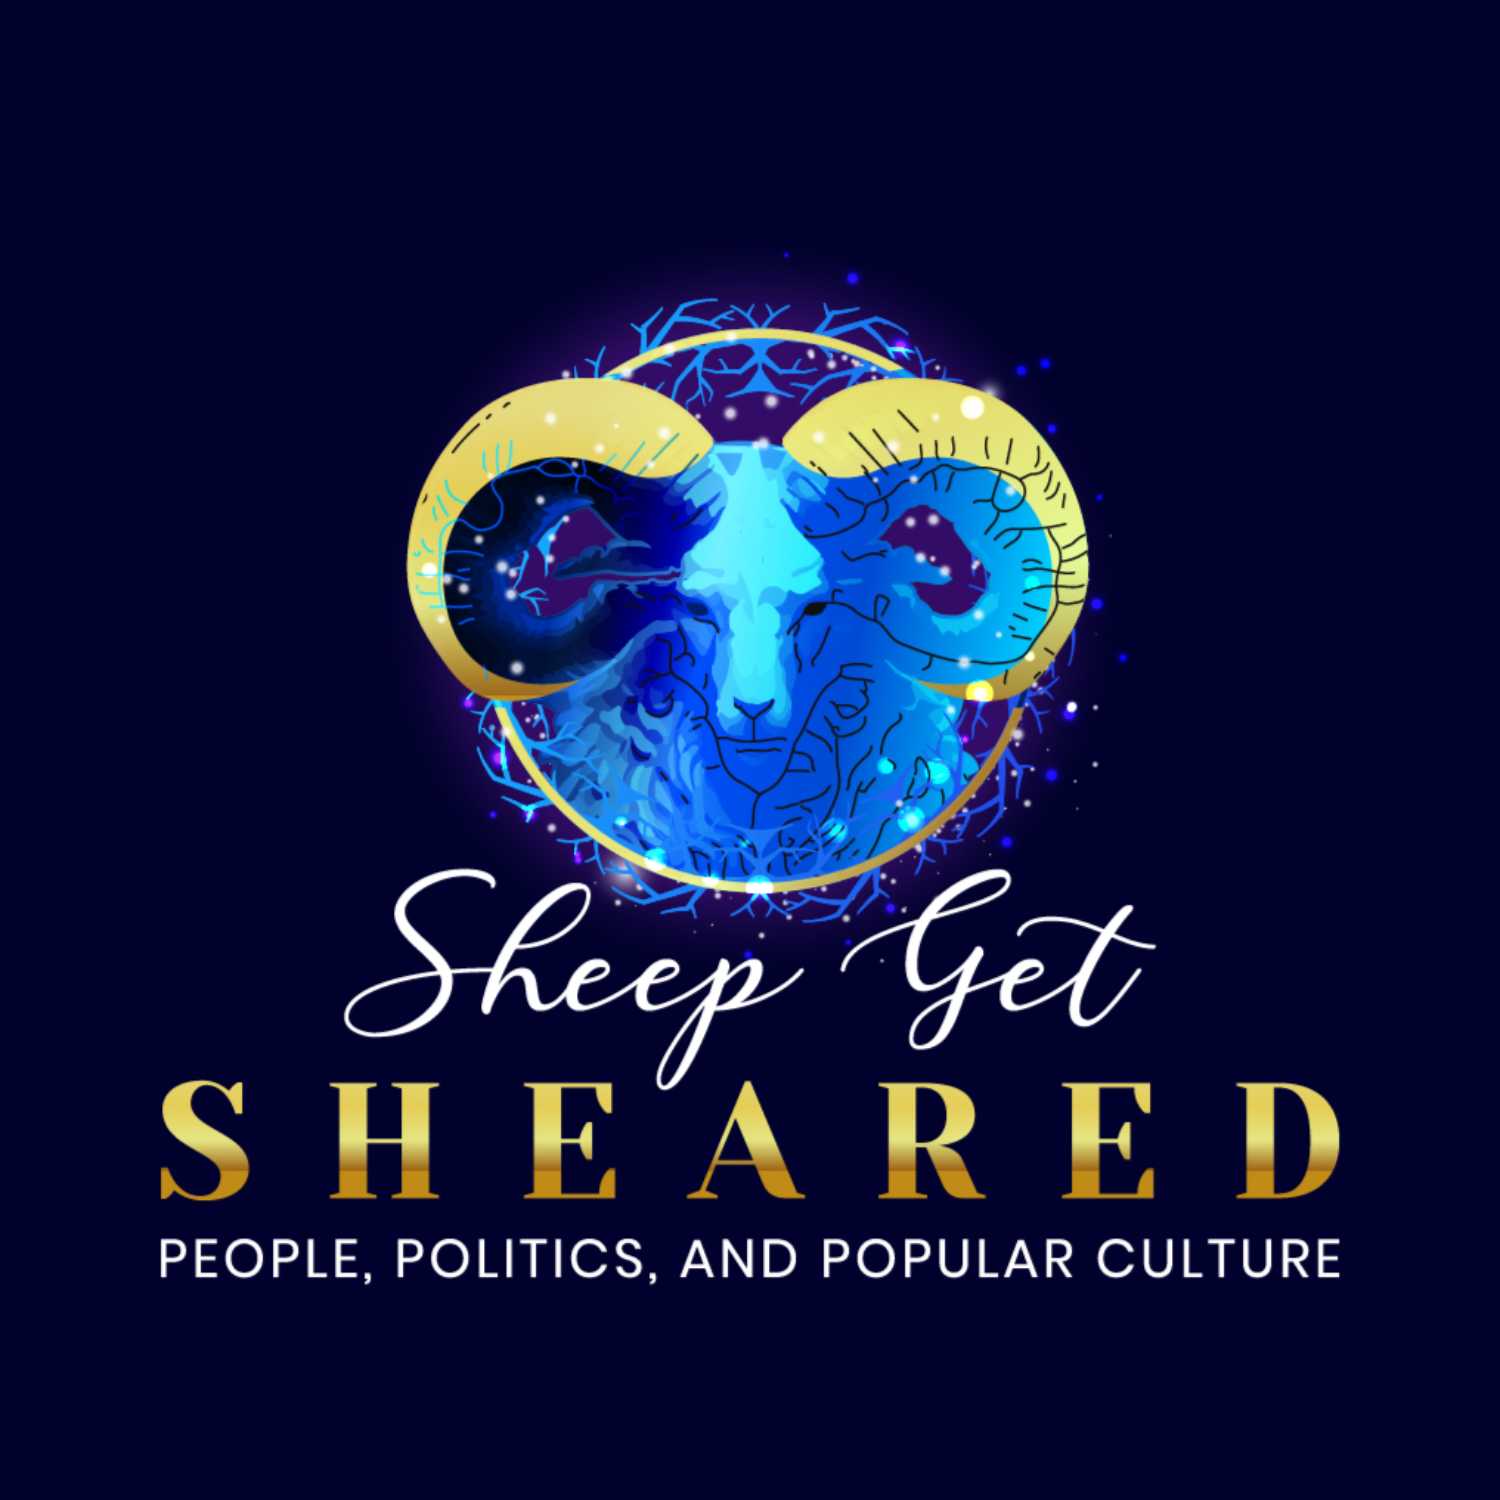 Sheep Get Sheared